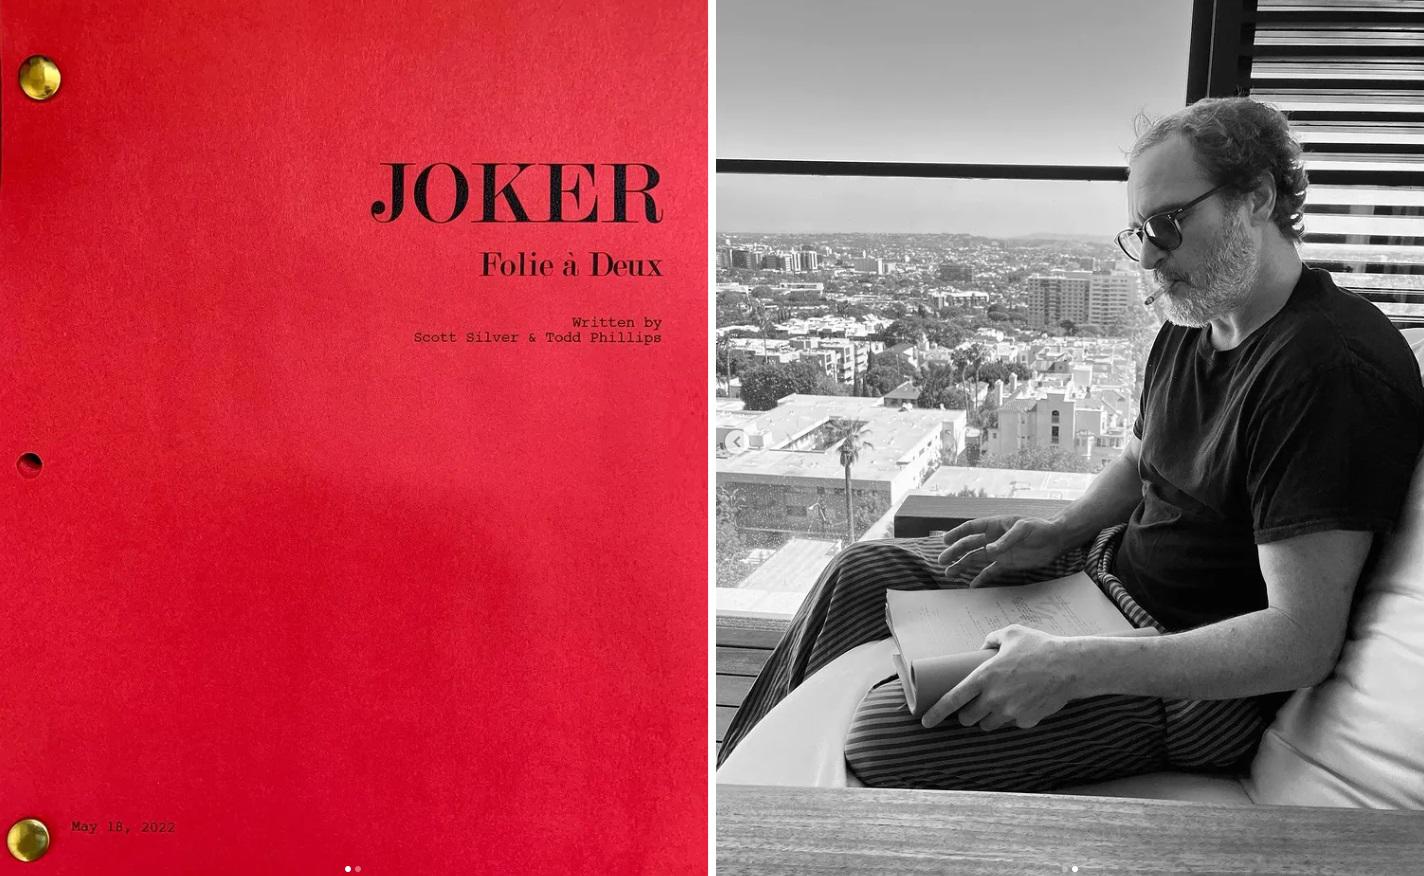 Todd Phillips, director de “Joker”, compartió estas fotos en su cuenta de Instagram, confirmando así la segunda entrega del filme.